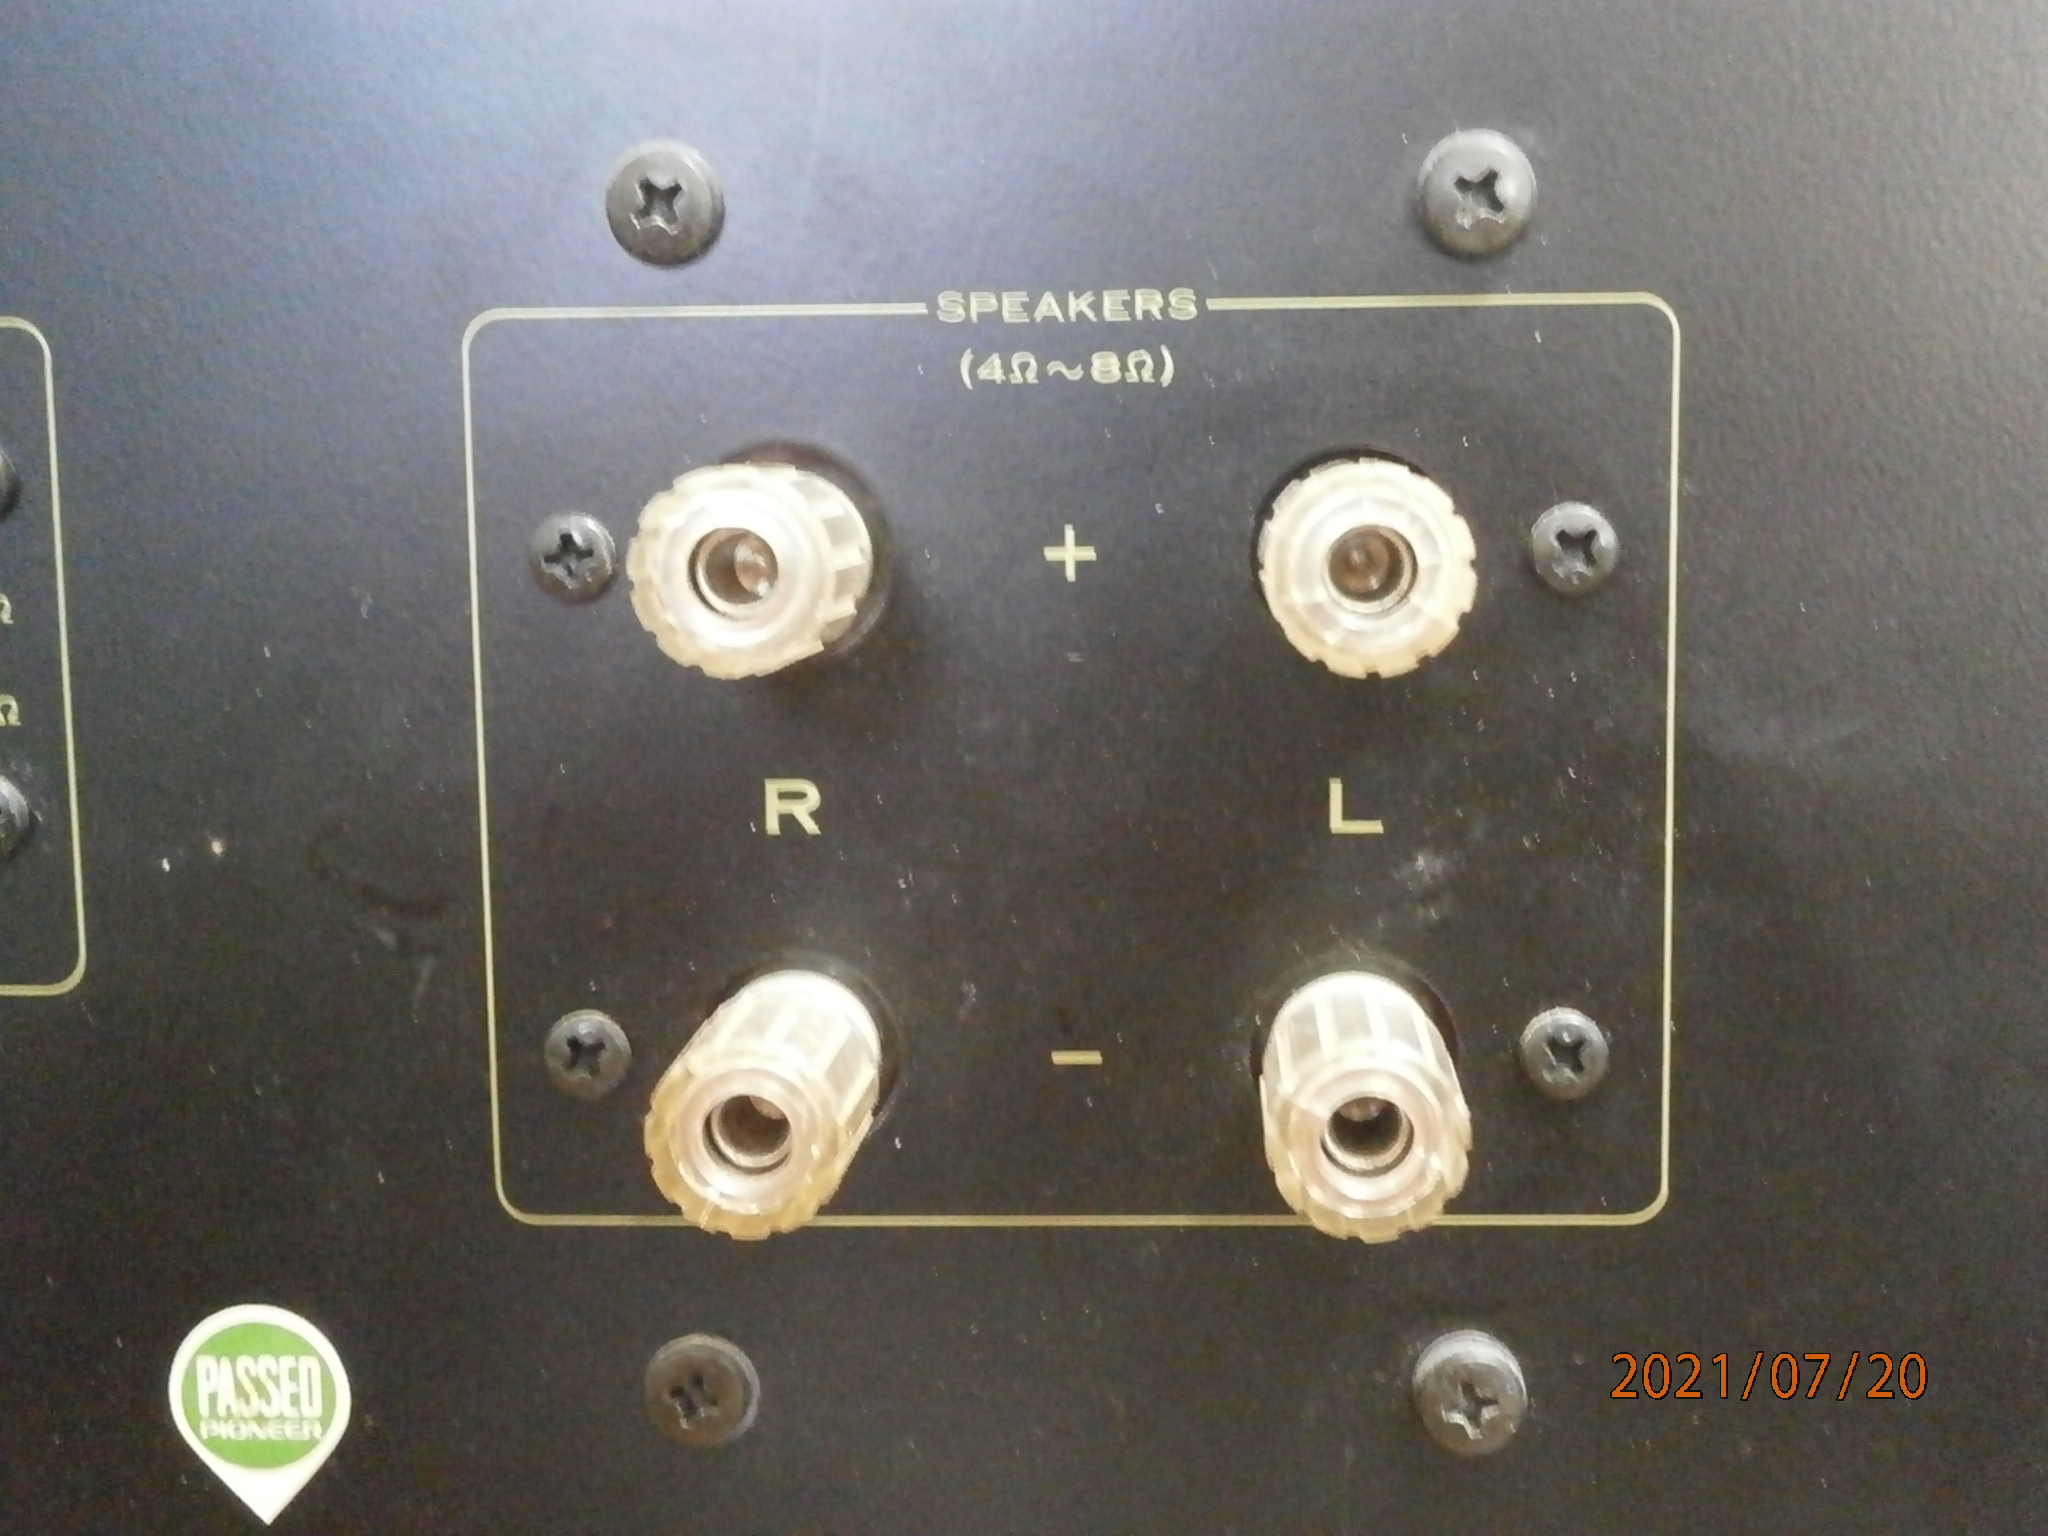 Spec-2 power amp